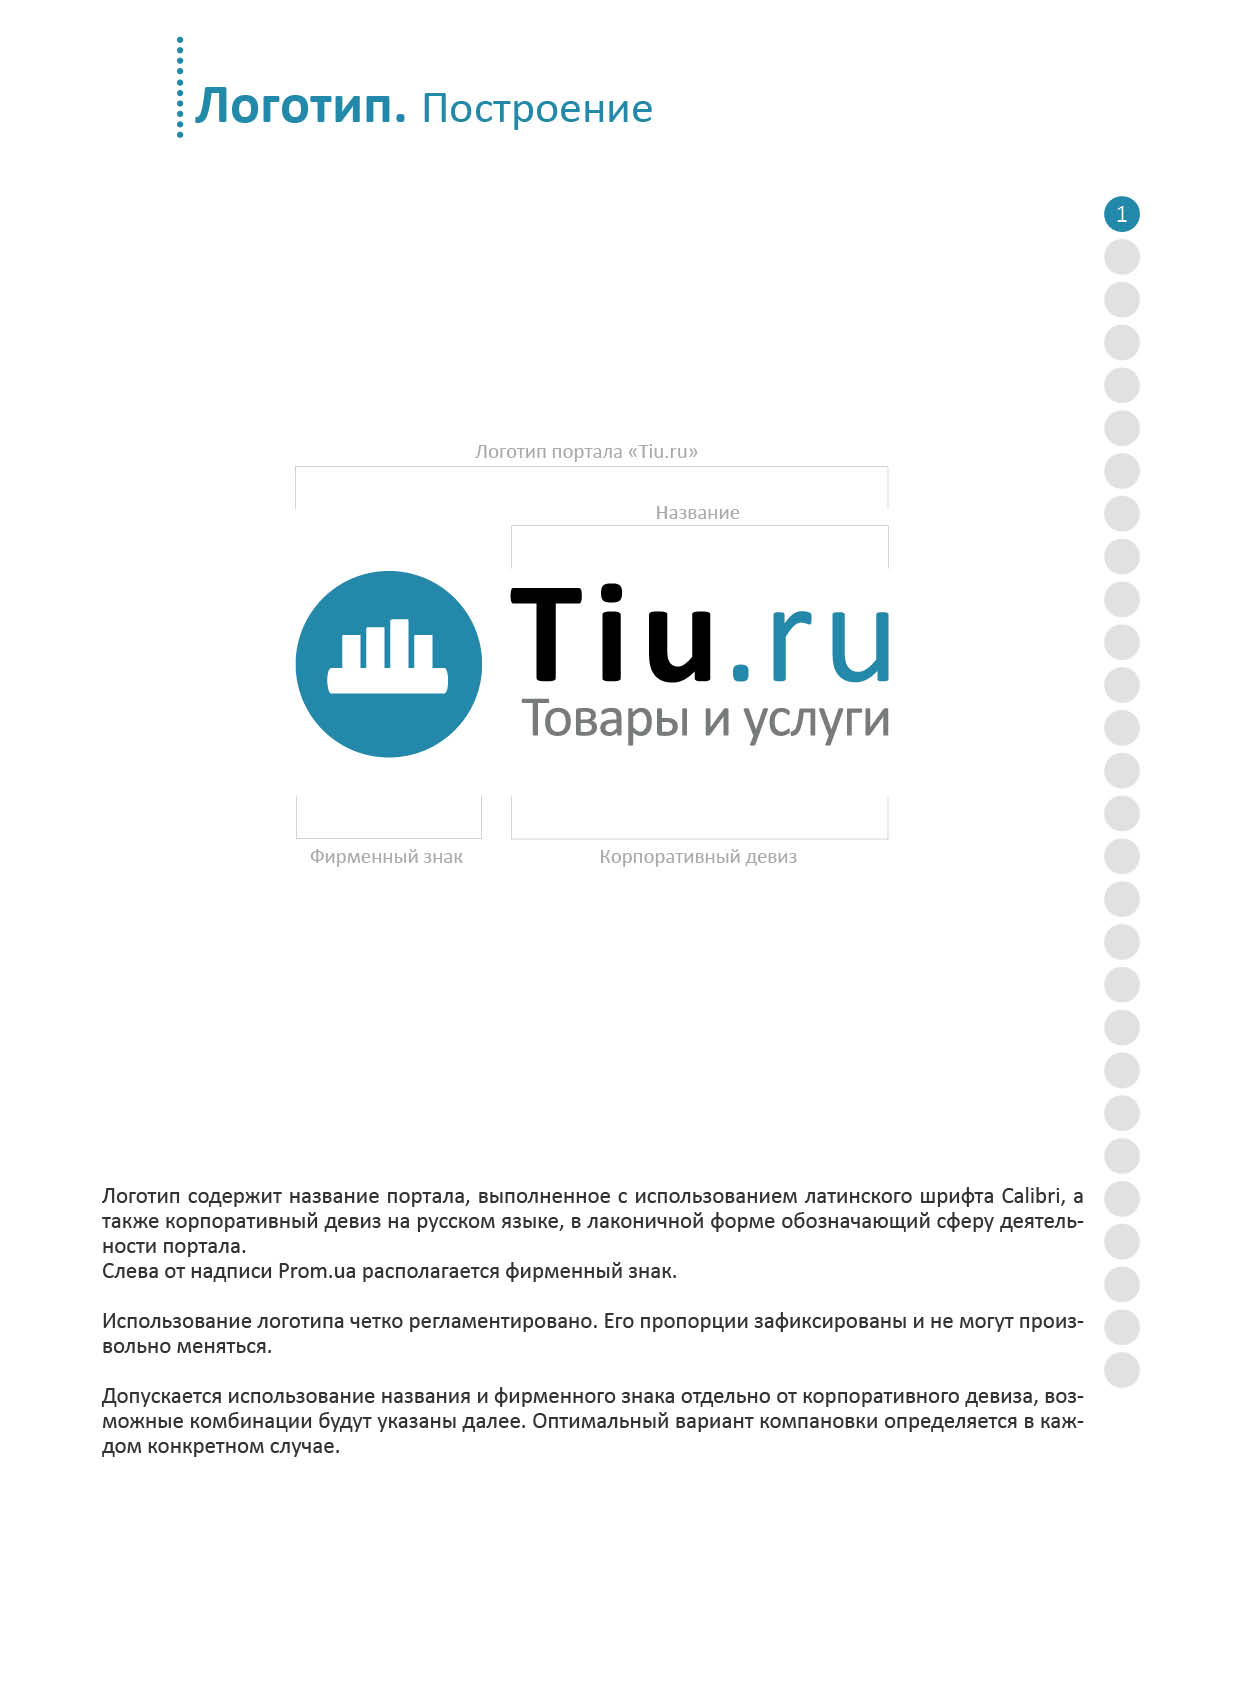 Brandbook Tiu.ru